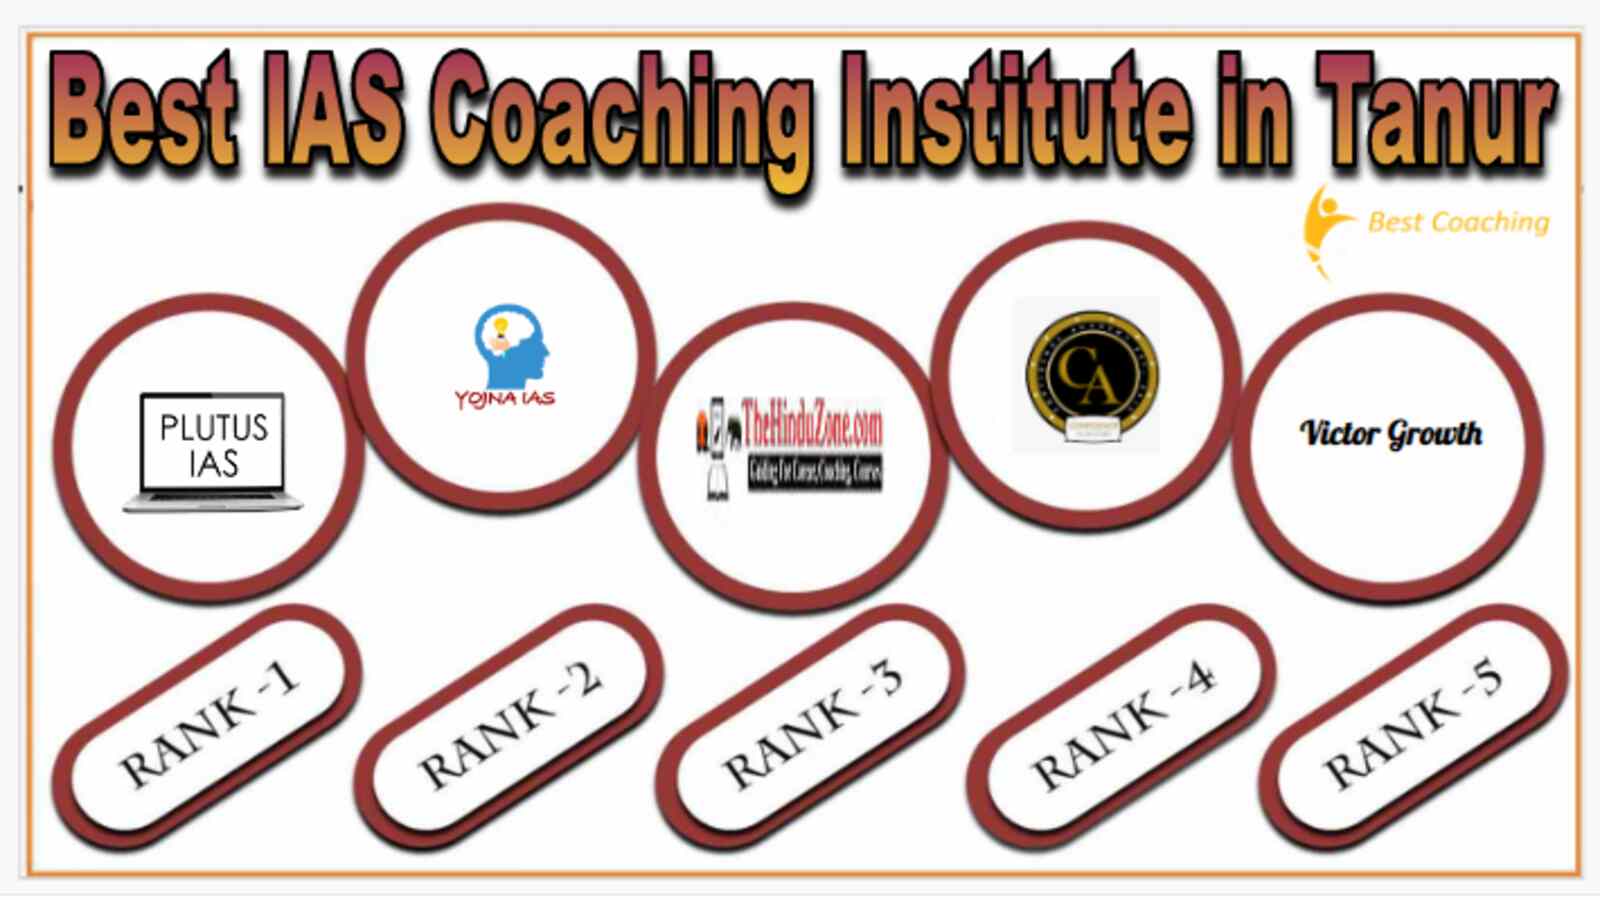 Best IAS Coaching Institute in Tanur